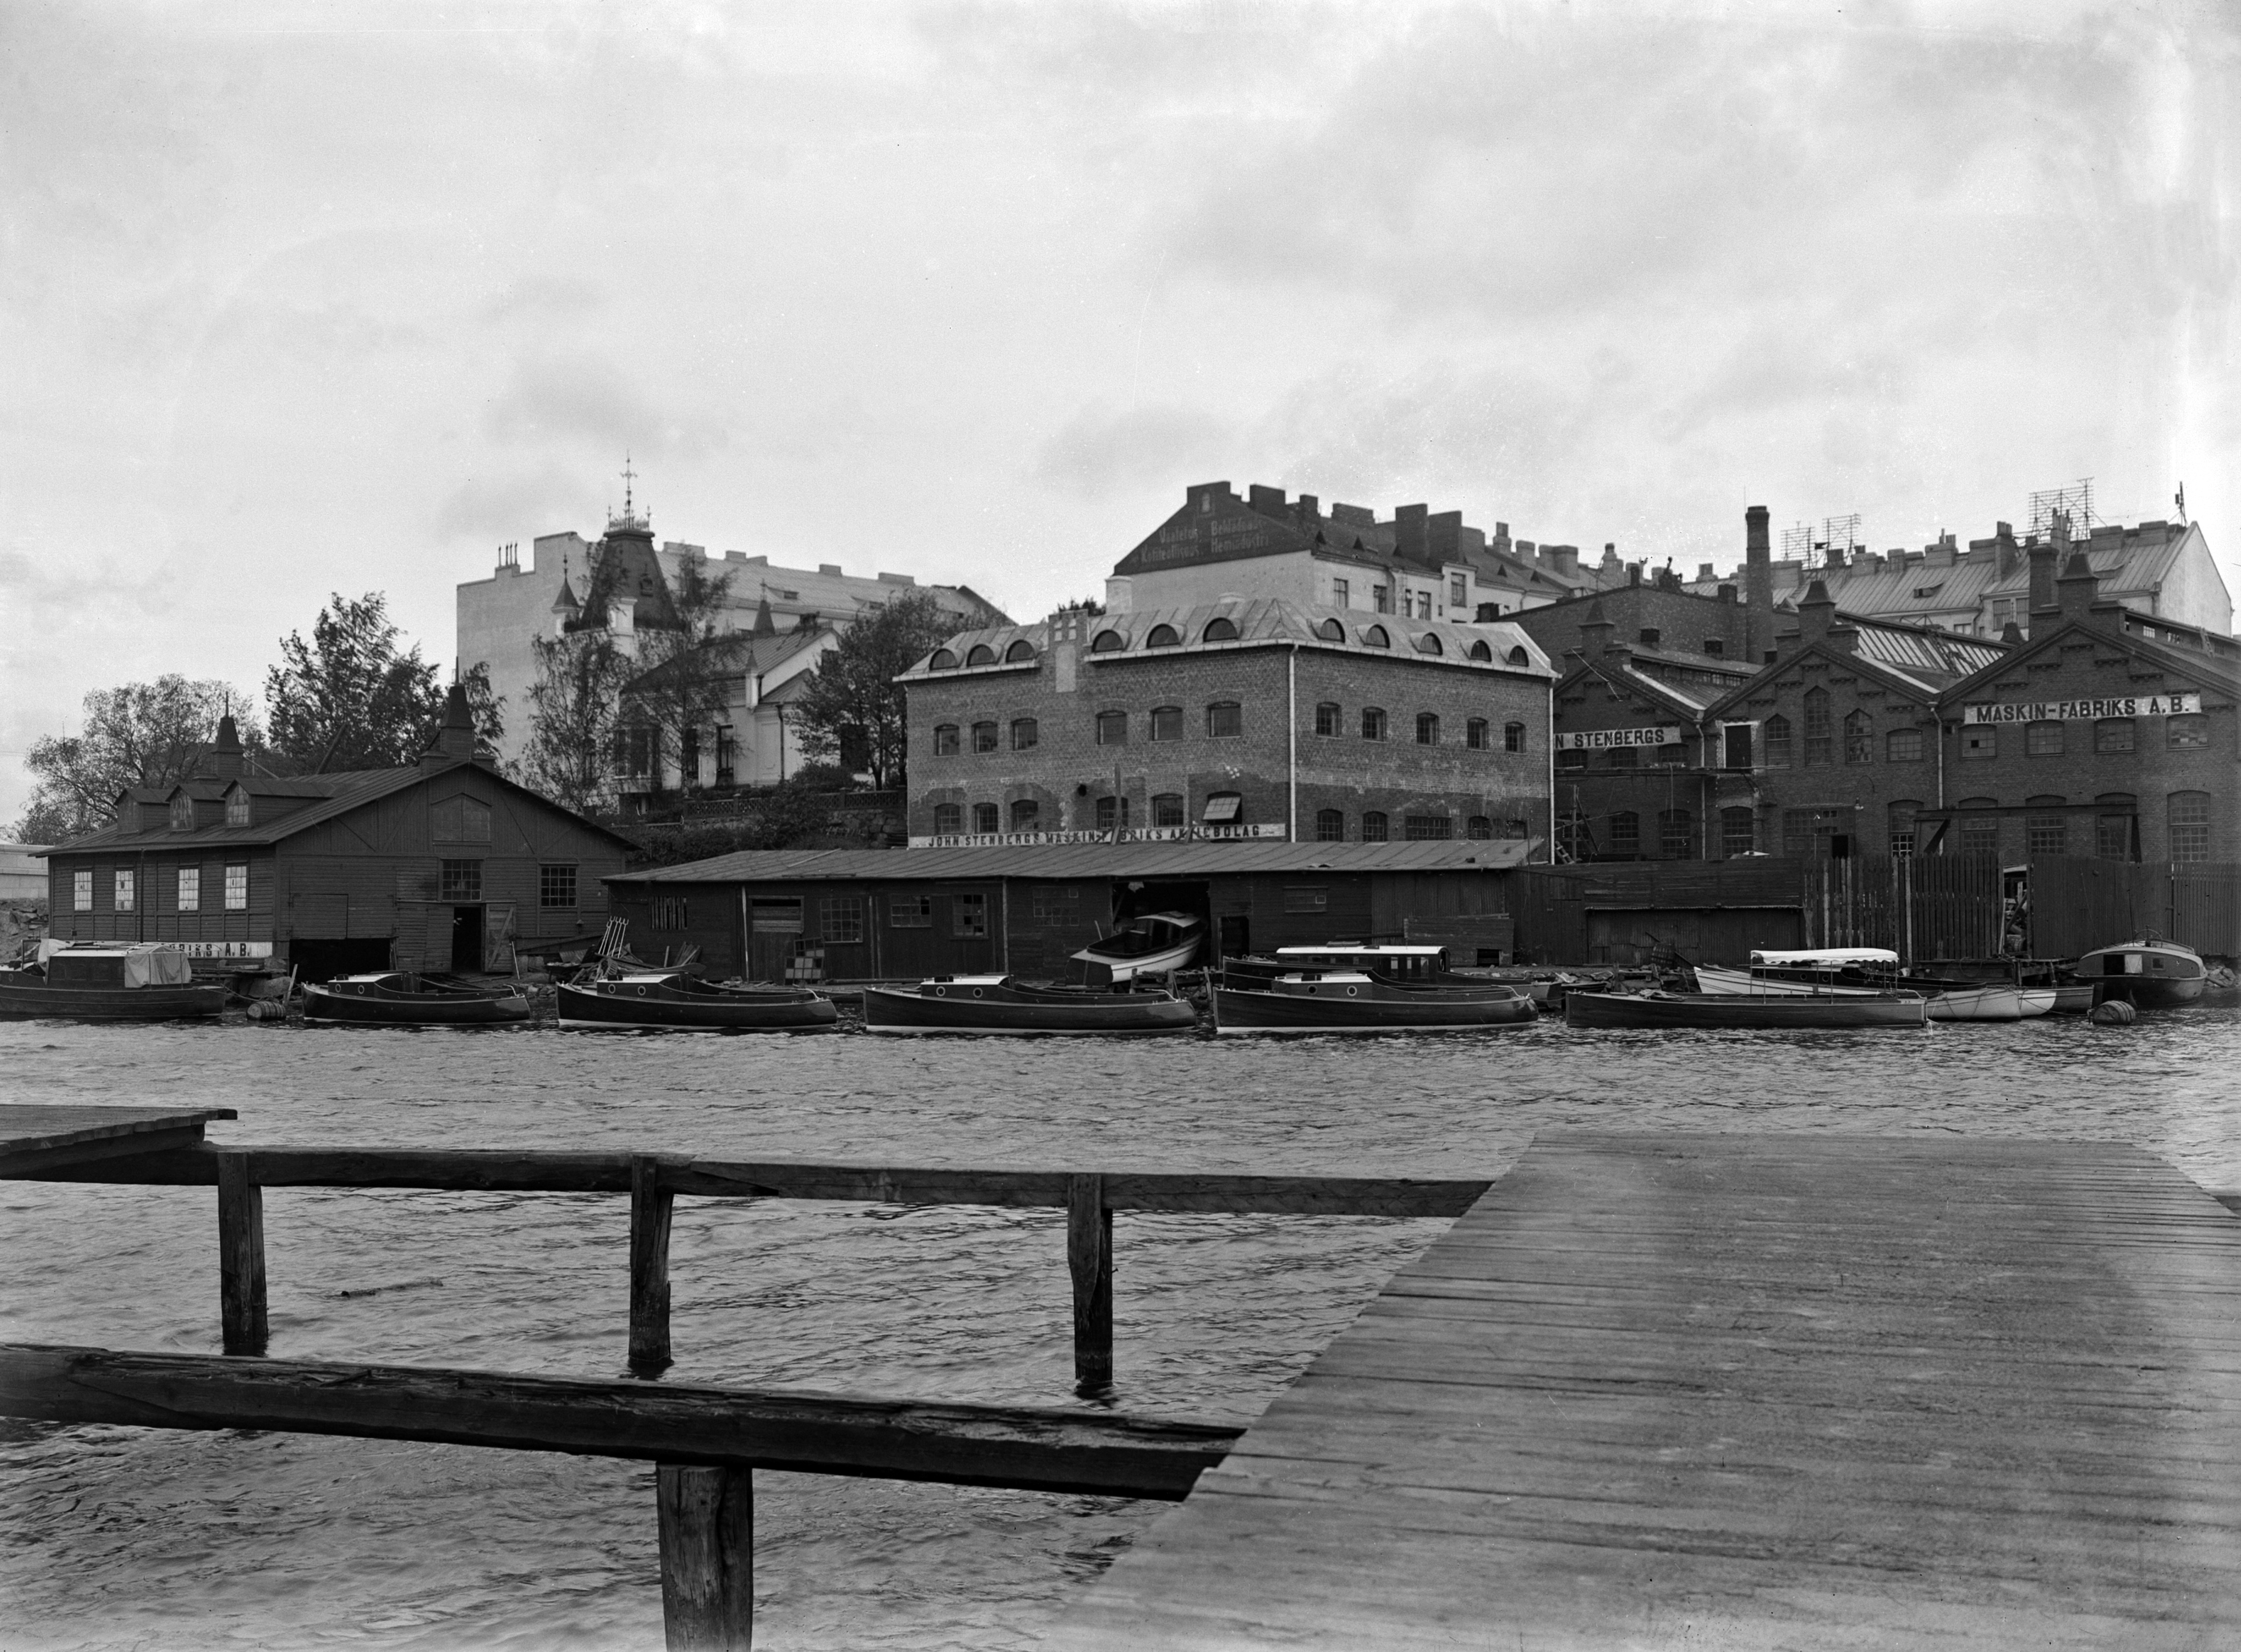 Näkymä John Stenbergin ranta 2:een (Pitkänsillanranta 1) Siltasaaressa. Etualalla venetelakka ja sen takana John Stenbergs Maskin-Fabrik Ab:n tuotantorakennuksia. Kuva on otettu vastapäiseltä rannalta Siltavuorenrannasta.